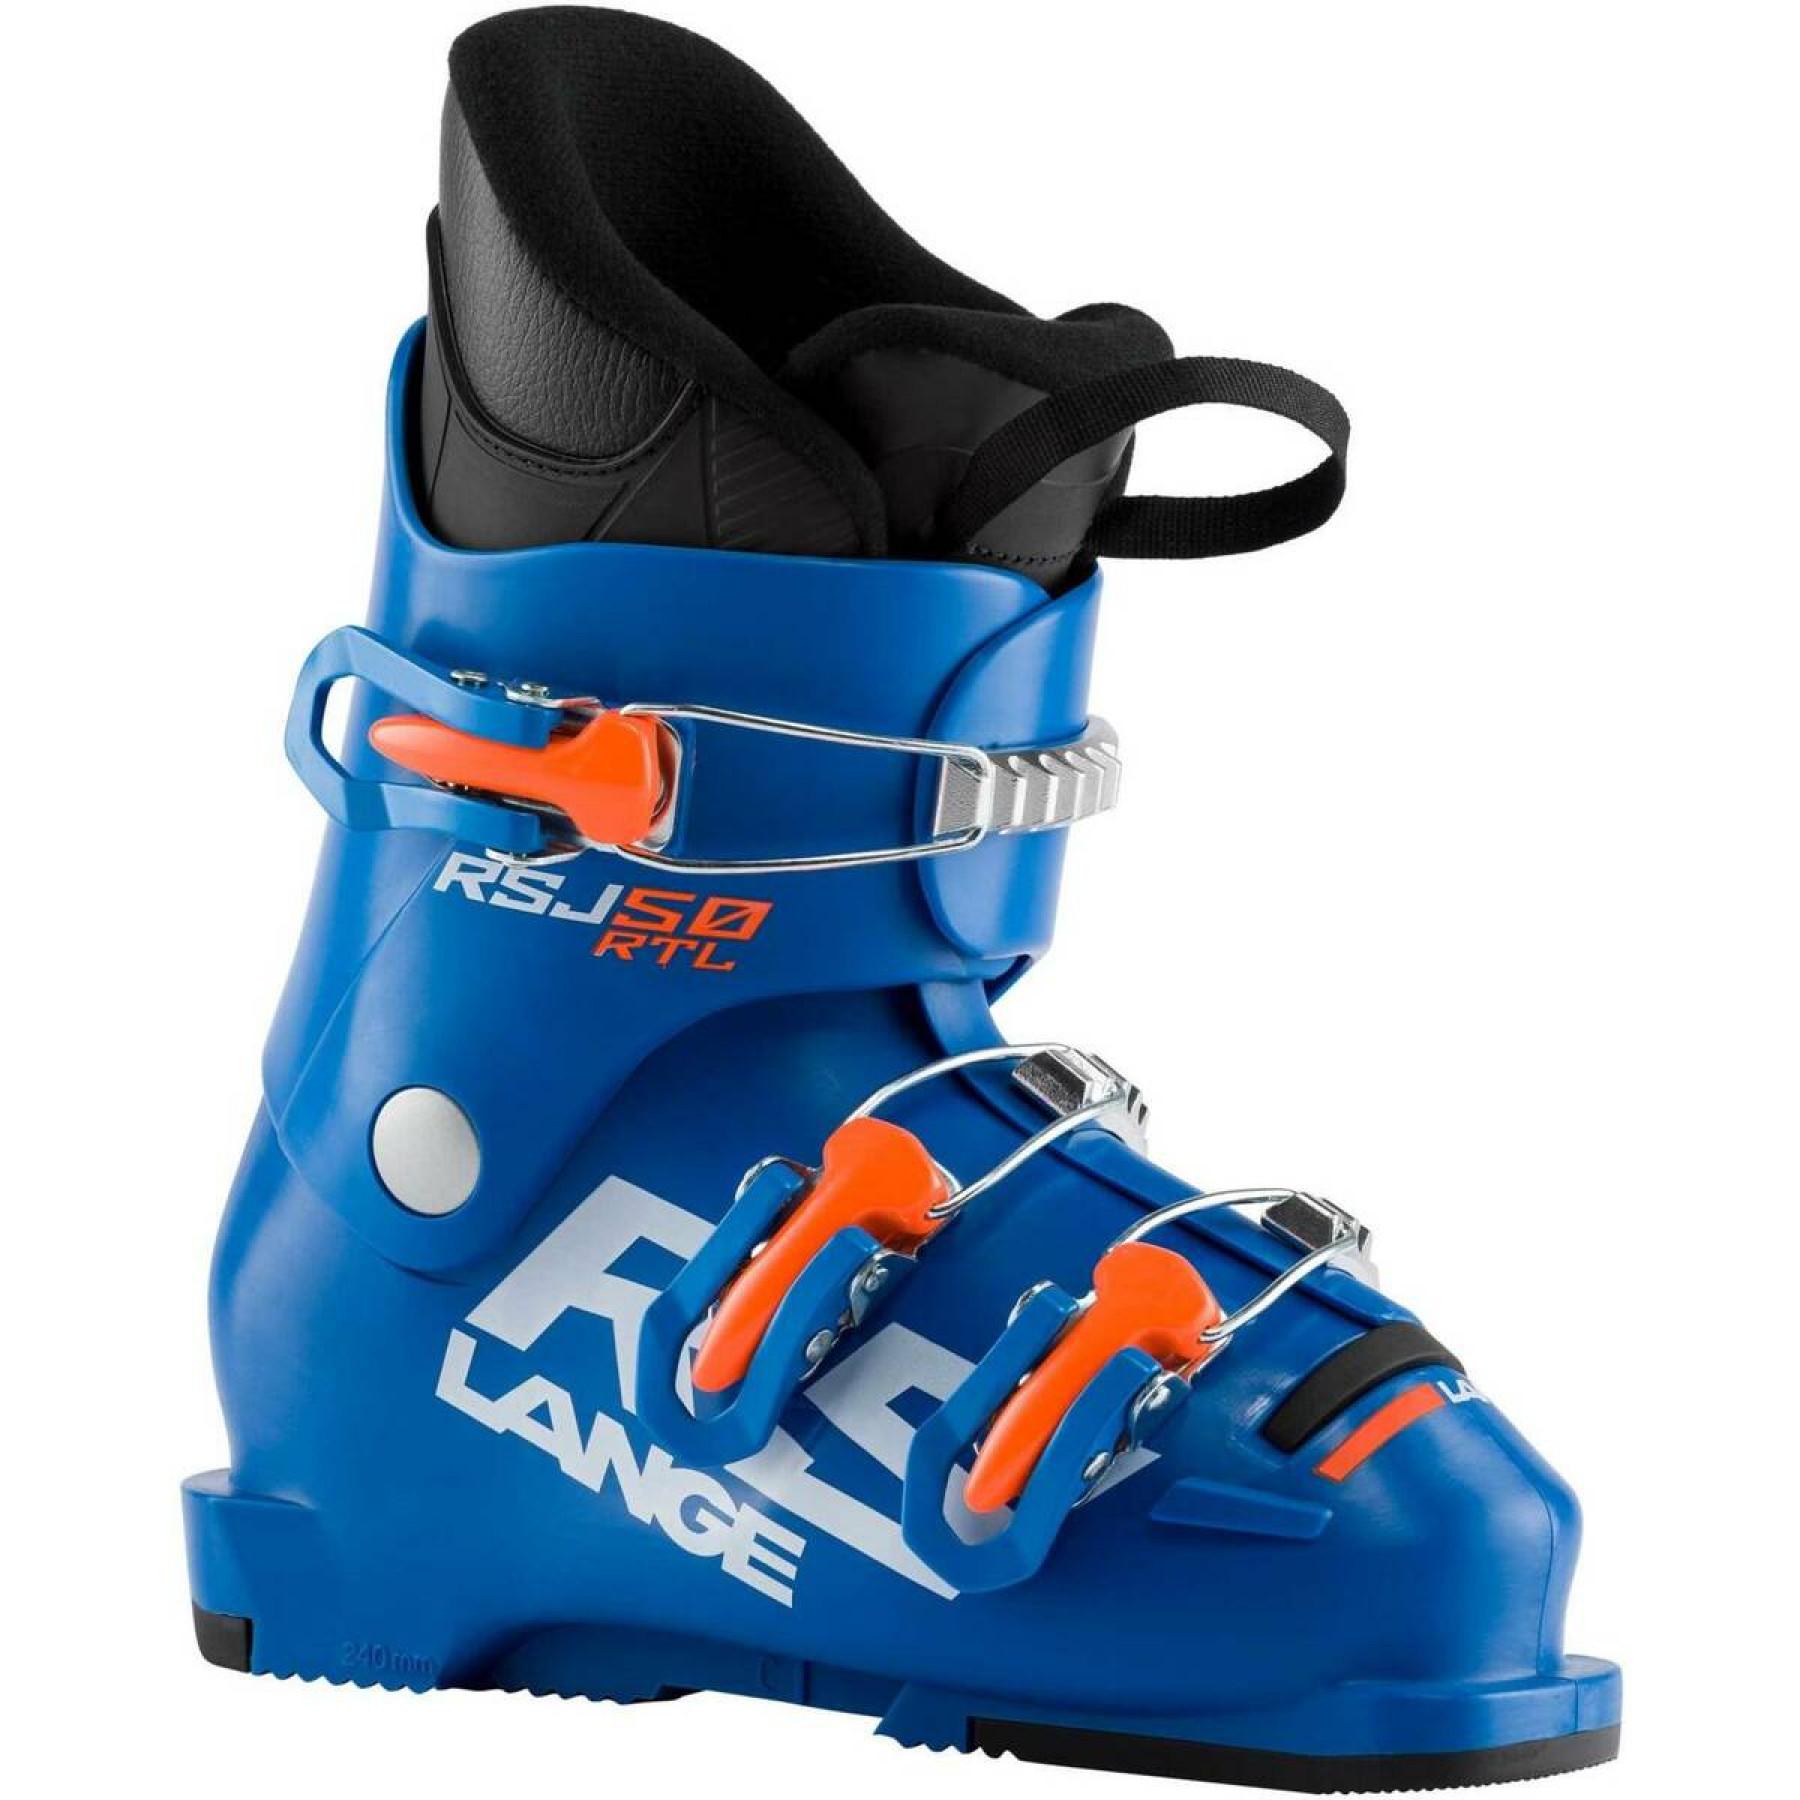 Chaussures de ski enfant Lange rsj 50 rtl